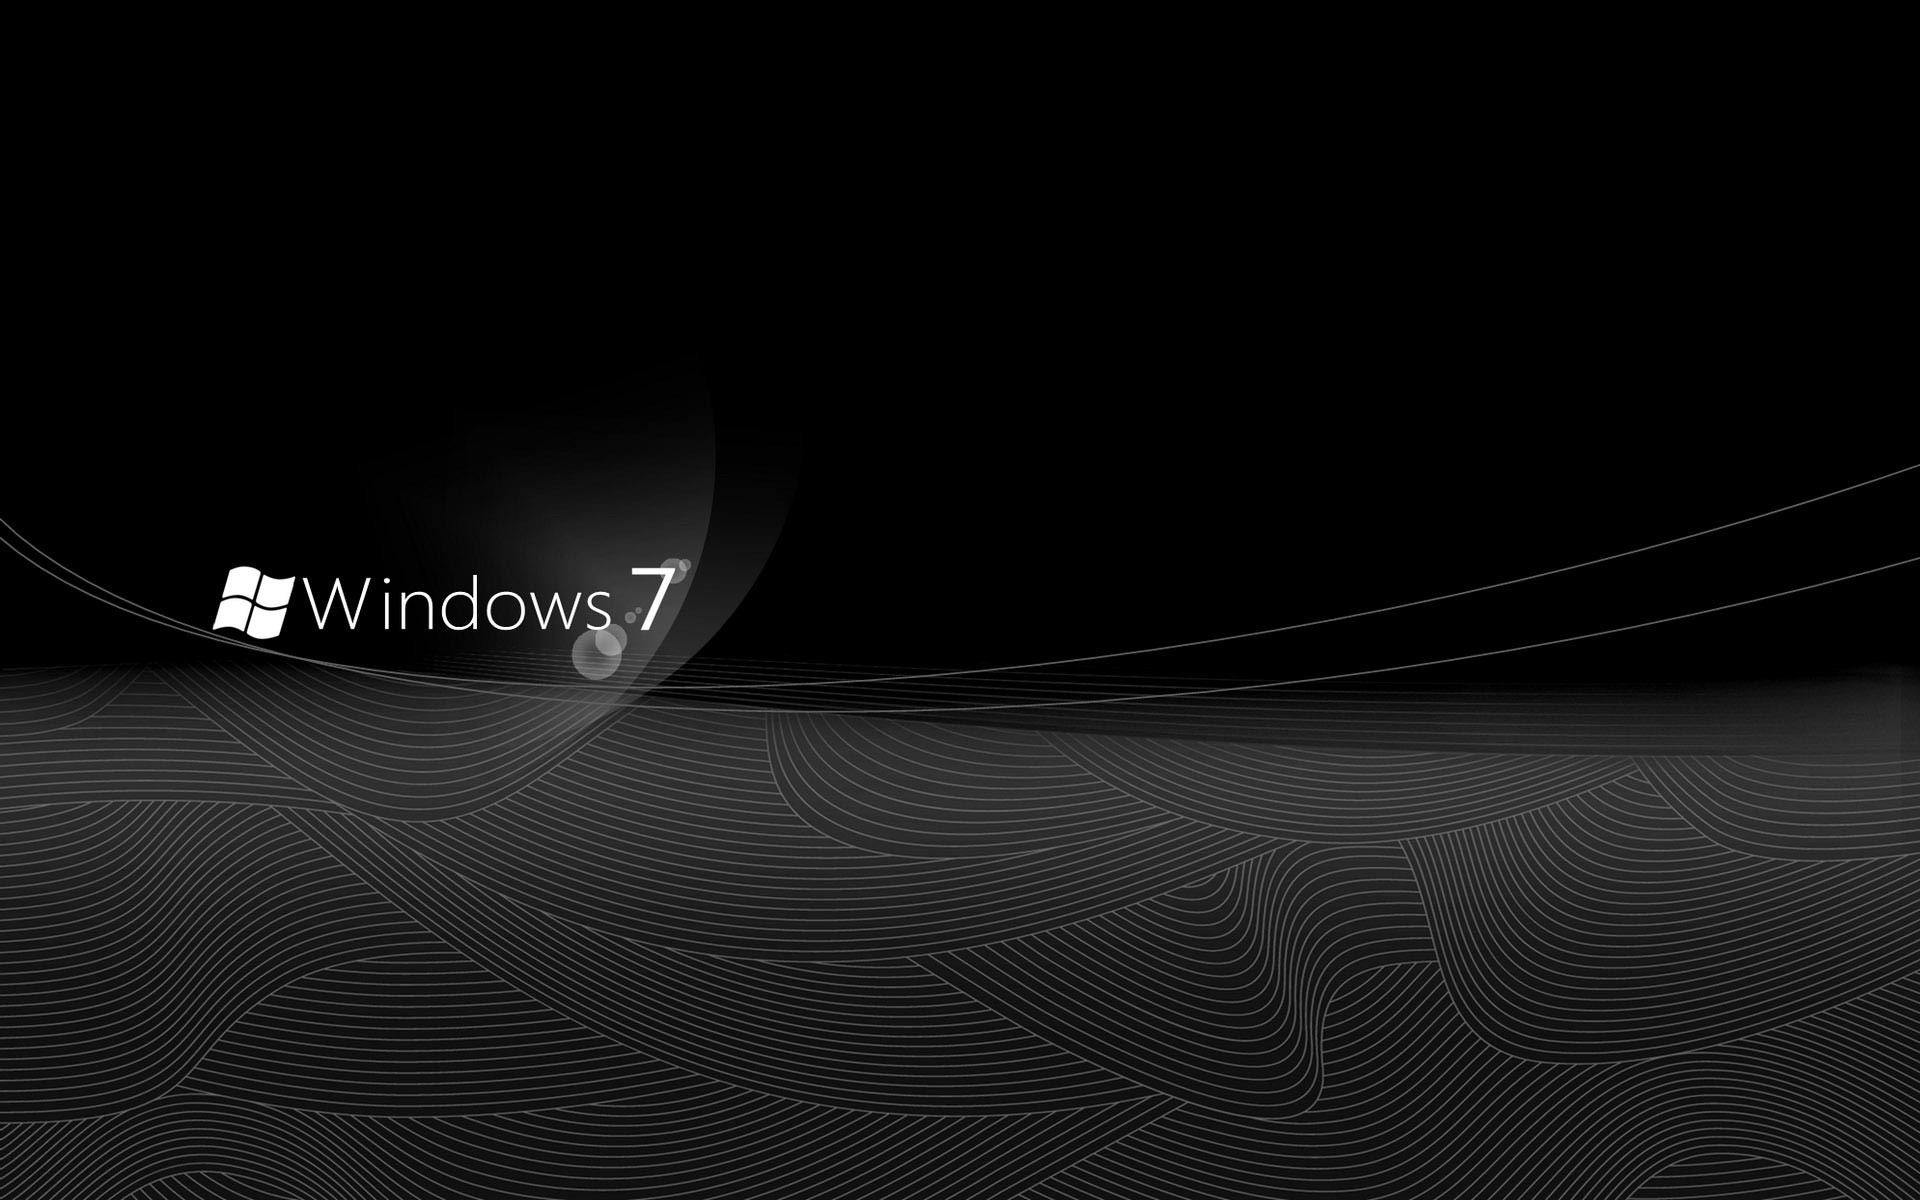 Hình ảnh nền Windows 7 màu đen sẽ khiến cho máy tính của bạn trở nên độc đáo và bắt mắt hơn bao giờ hết. Hãy xem hình ảnh liên quan để khám phá những hình ảnh nền đen độc đáo nhất cho máy tính của bạn.